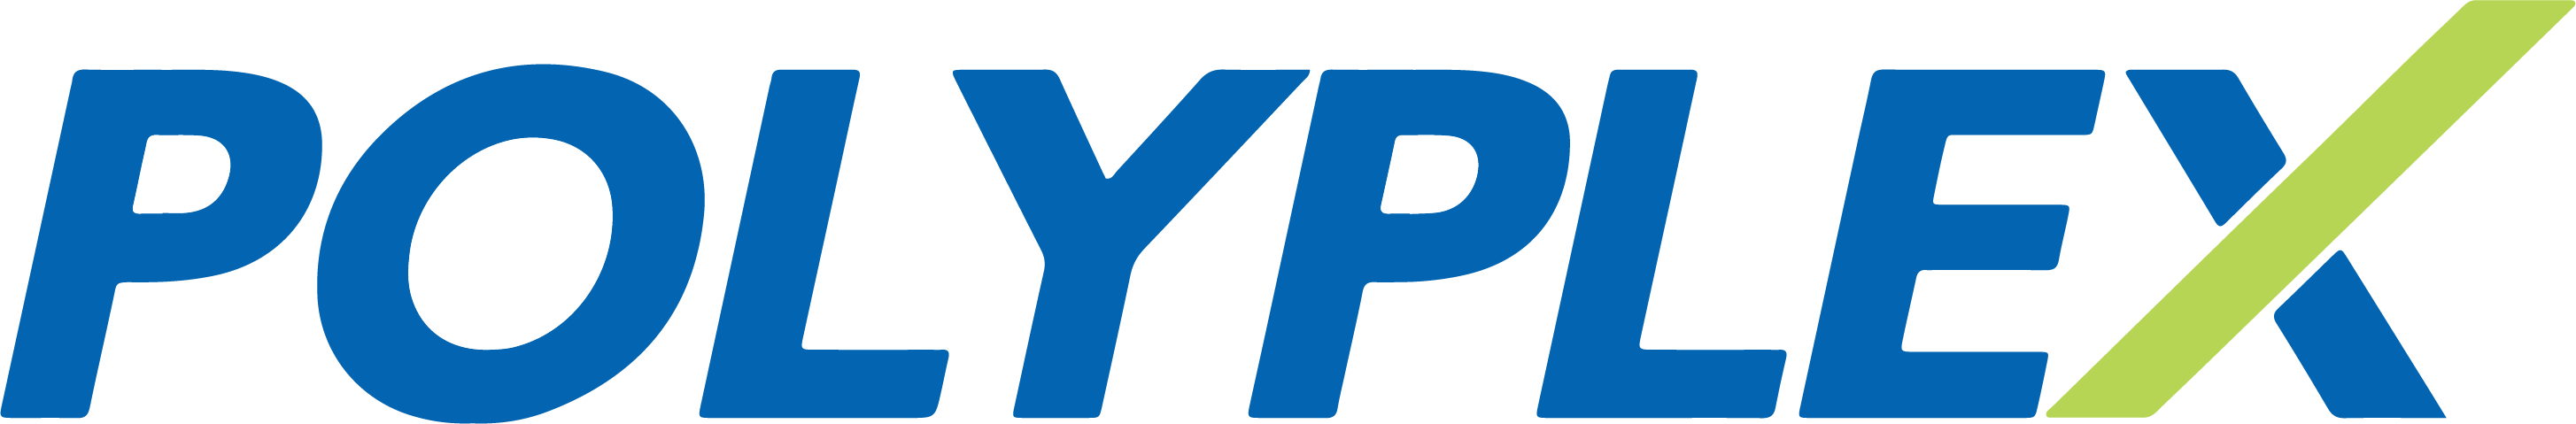 https://fame-usa.com/wp-content/uploads/2021/07/Polyplex-USA-logo.png